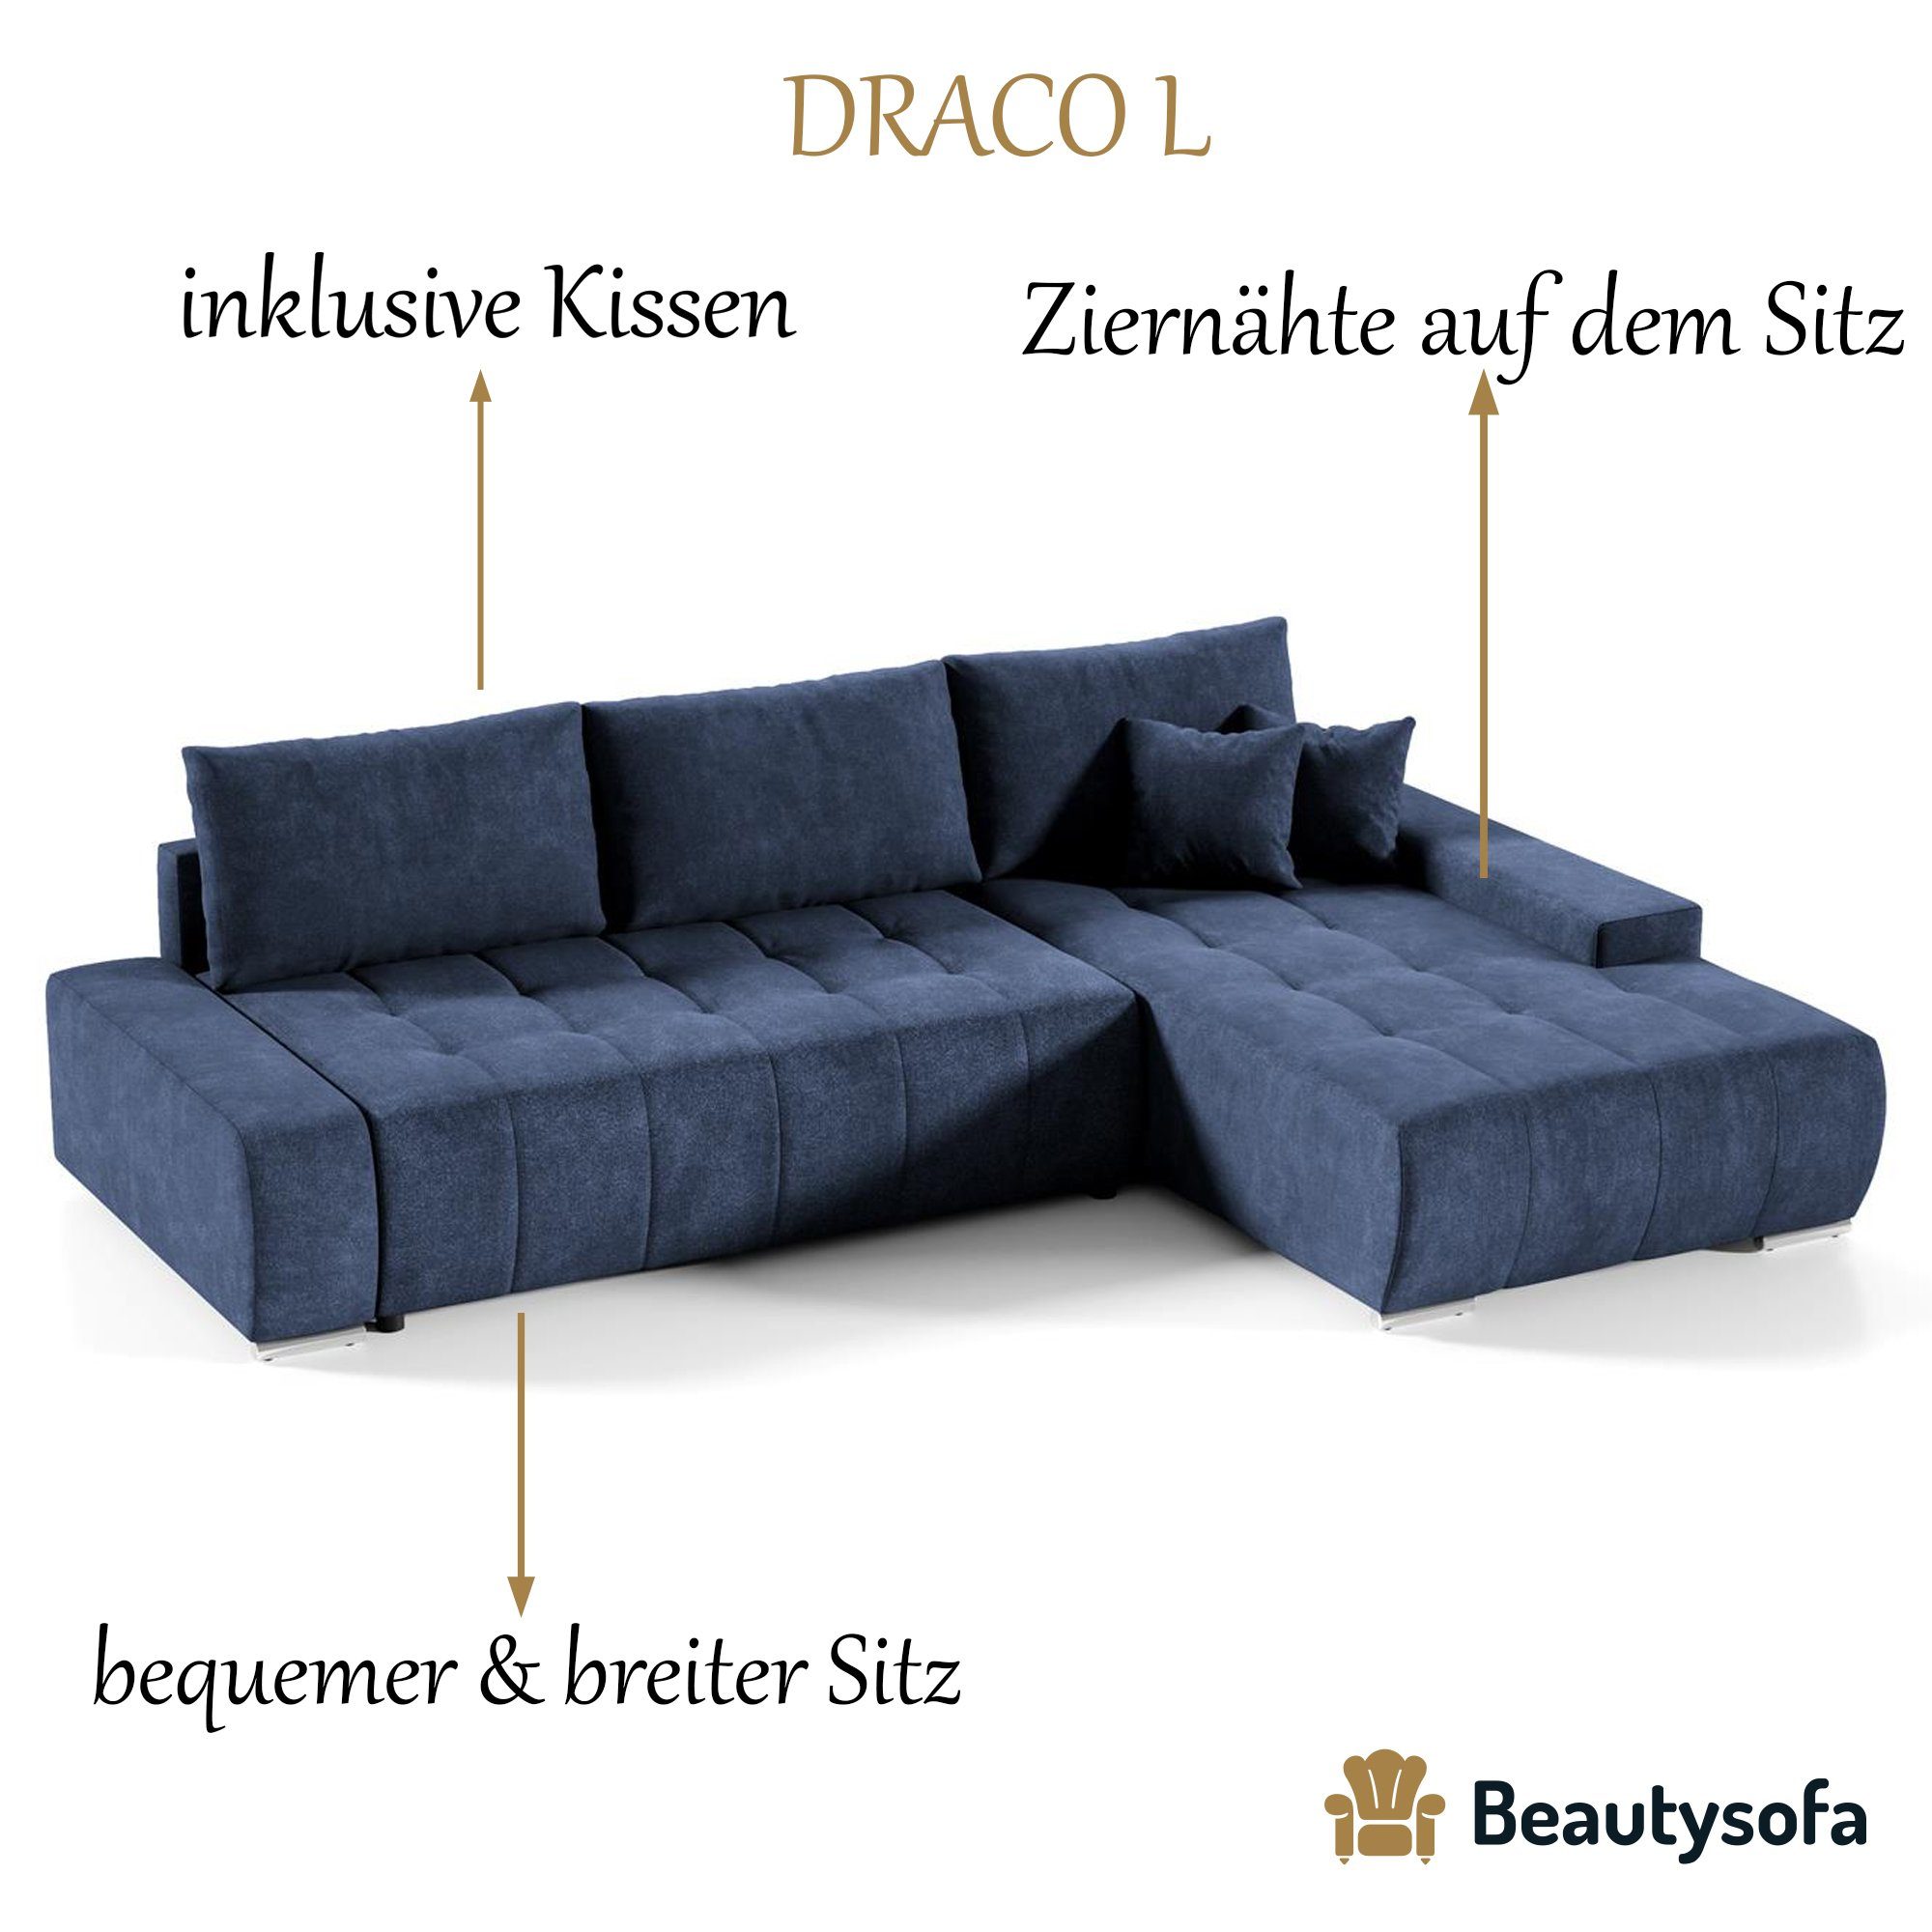 Wohnzimmer Sofa DRACO Couch Dunkelblau Ecksofa 26) mit Schlaffunktion, Beautysofa Ecksofa Bettkasten (aston